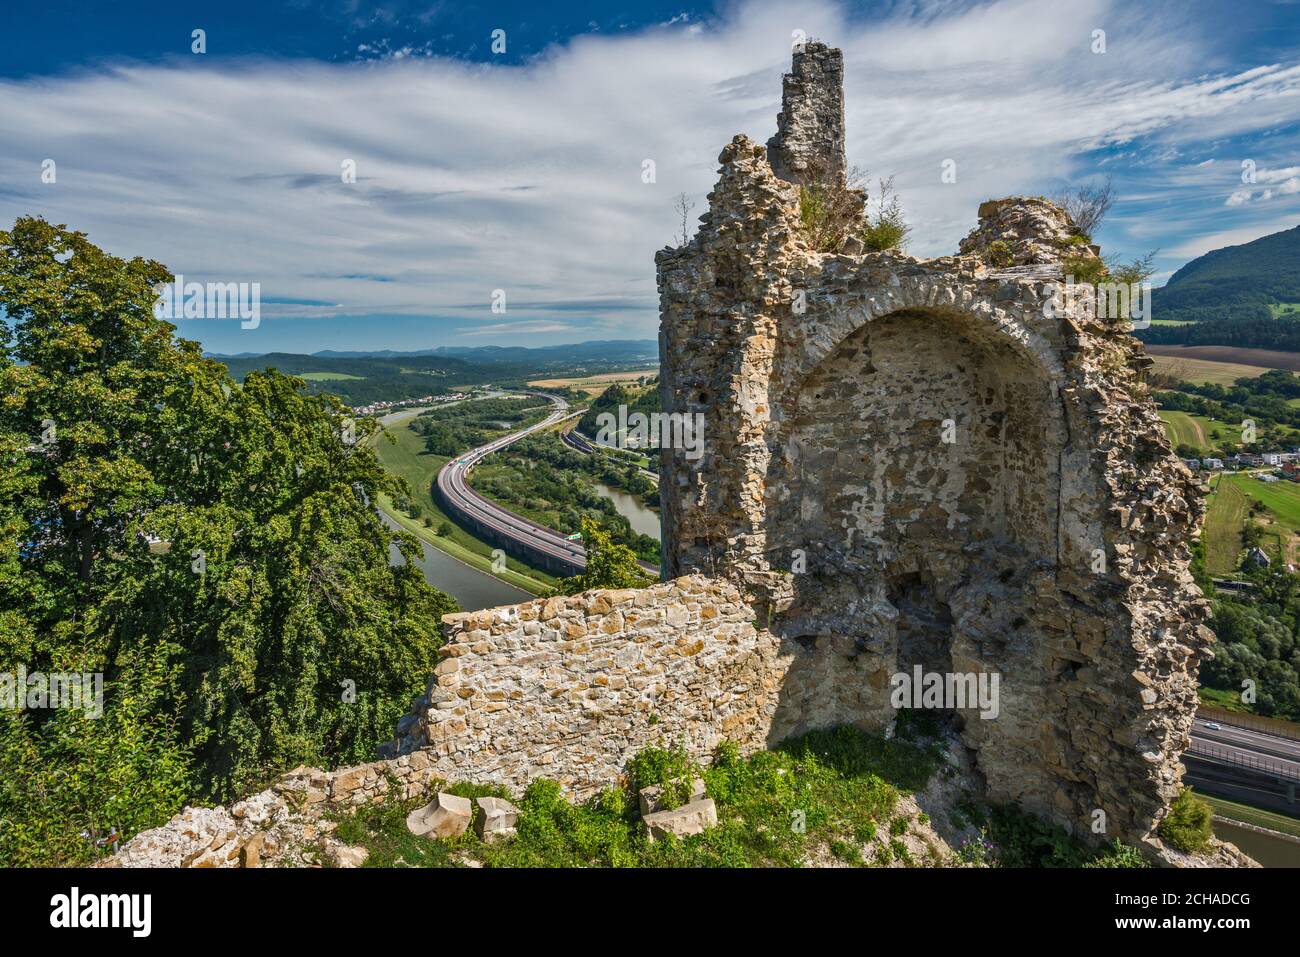 Vista del valle del río Vah desde Považský hrad (Hrad Bystrica), castillo medieval sobre el pueblo de Považská Bystrica, región de Trencin, Eslovaquia Foto de stock